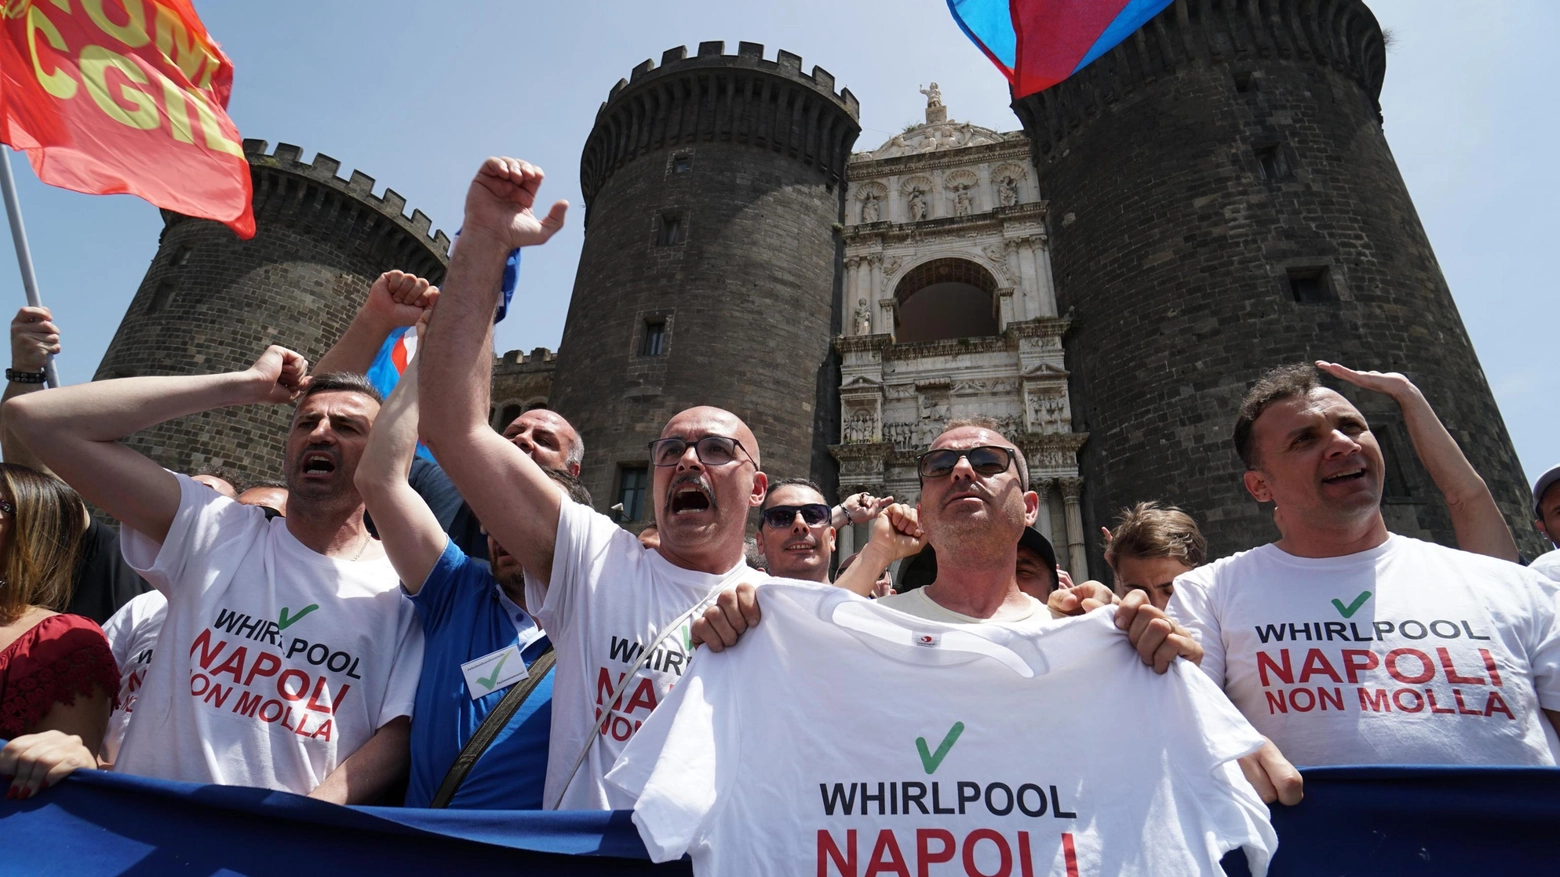 Whirlpool lavoratori con lo slogan 'Napoli non molla'